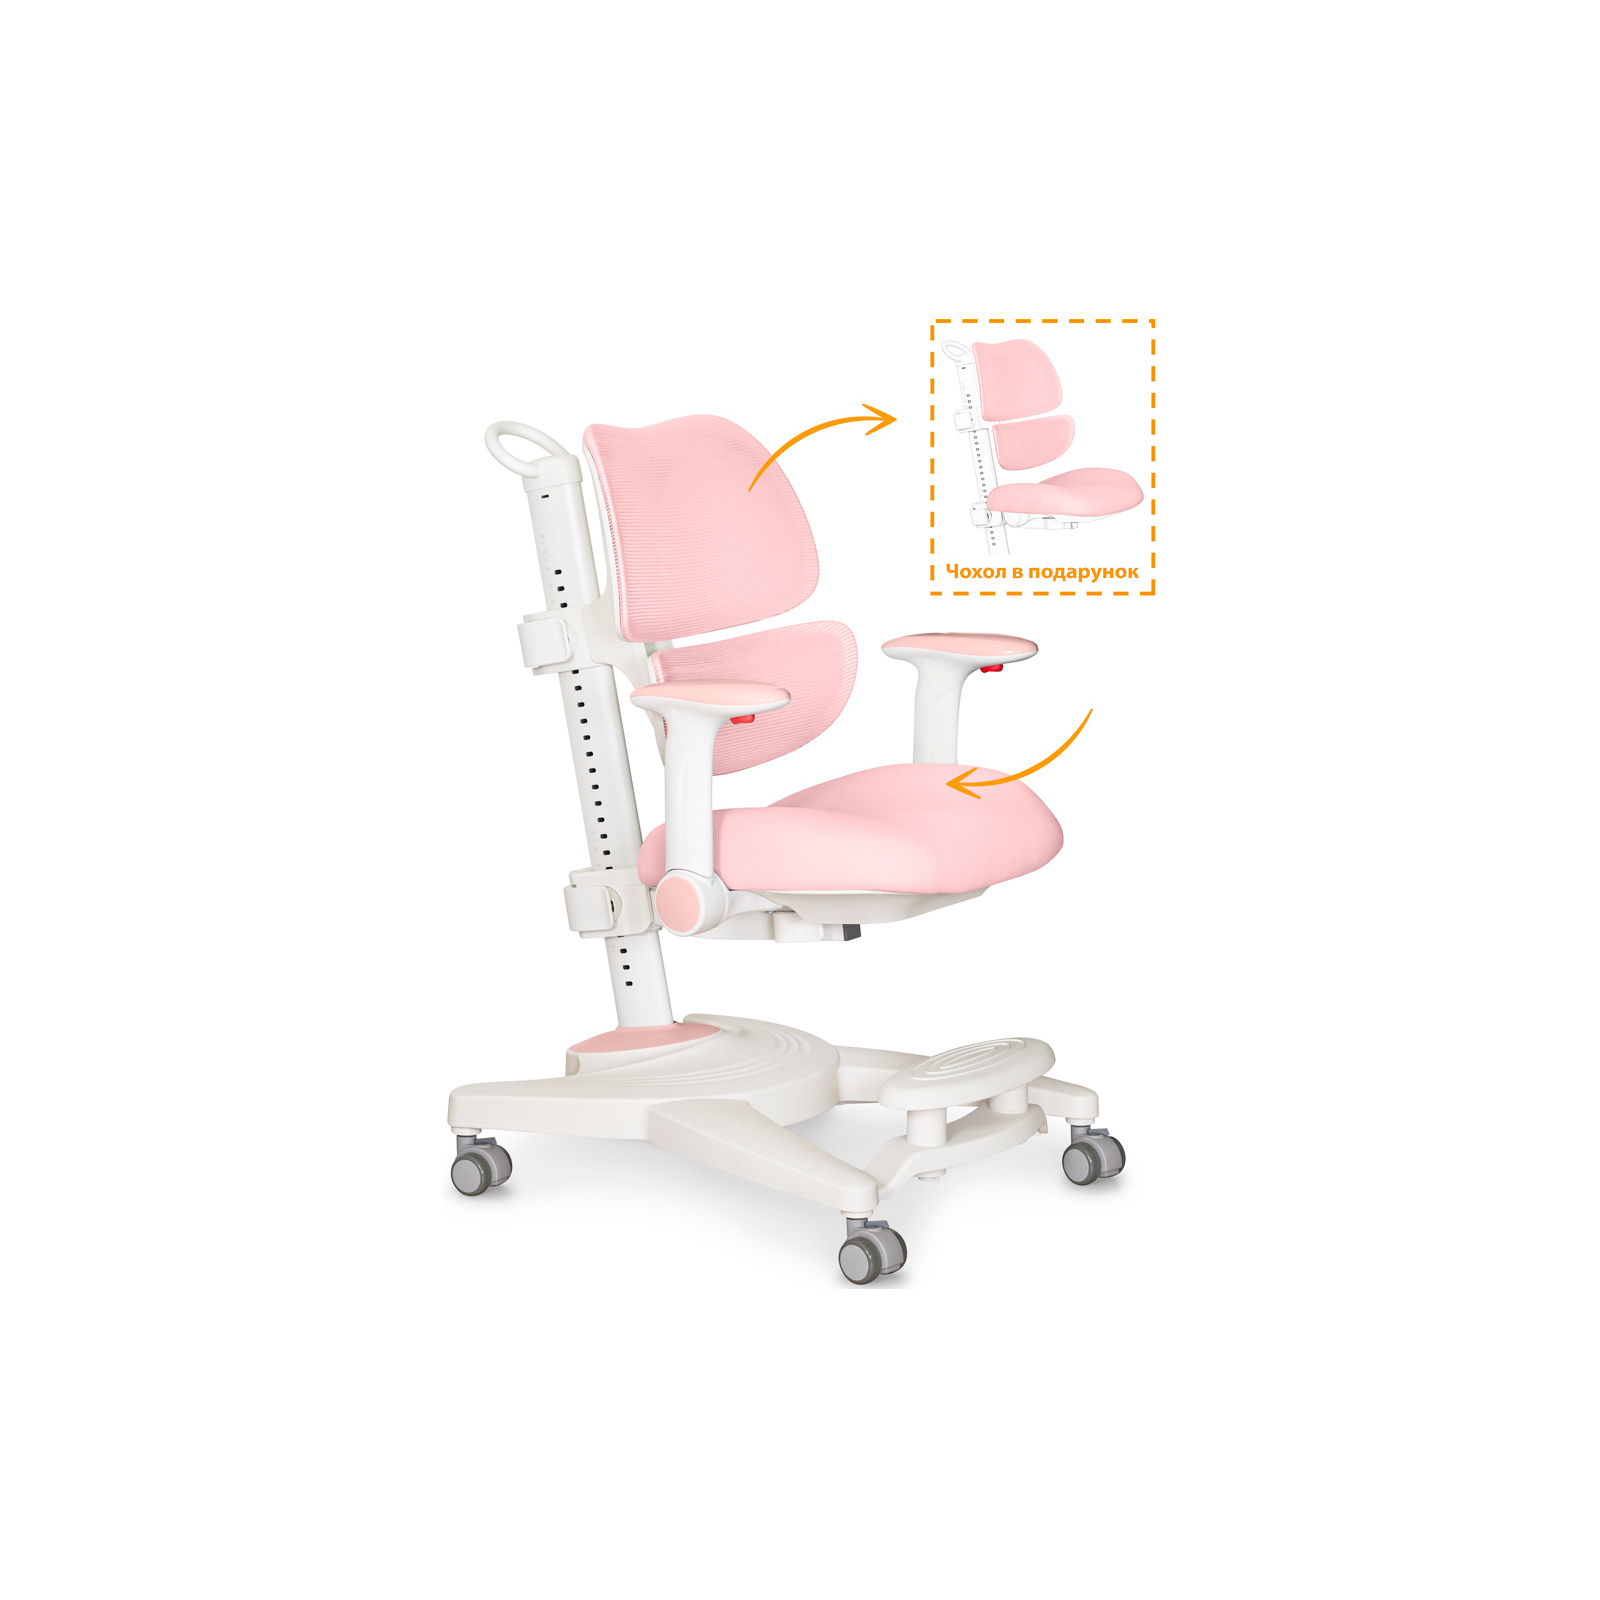 Детское кресло Mealux Space Air Grey (Y-609 G) изображение 2